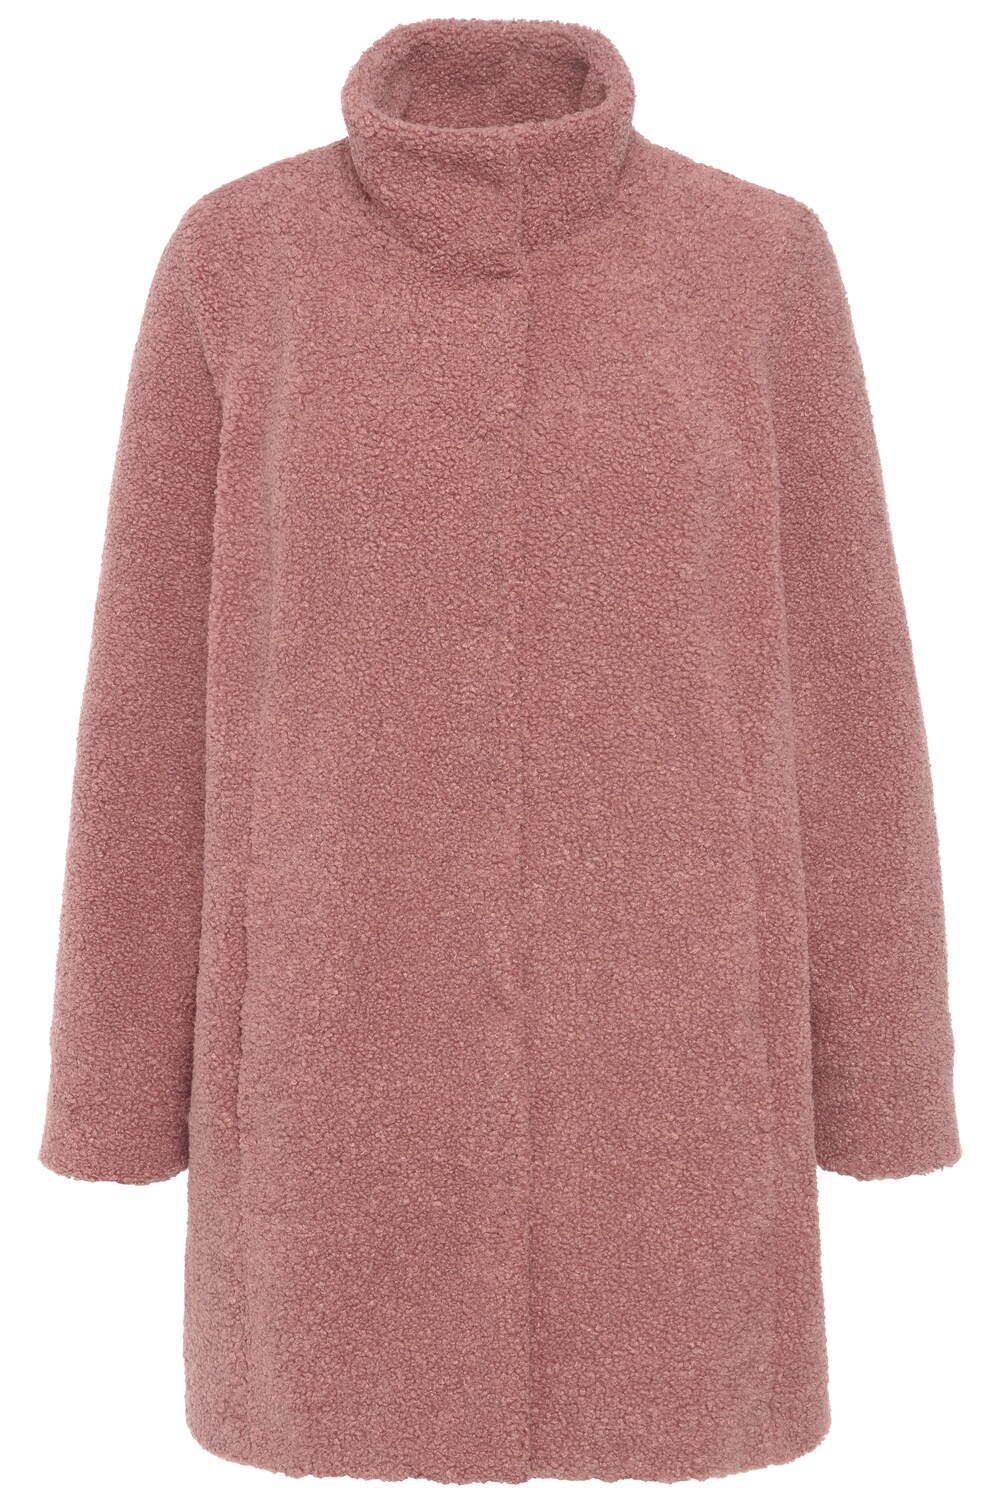 Межсезонное пальто Ulla Popken, пастельно-красный межсезонное пальто ulla popken пестрый коричневый